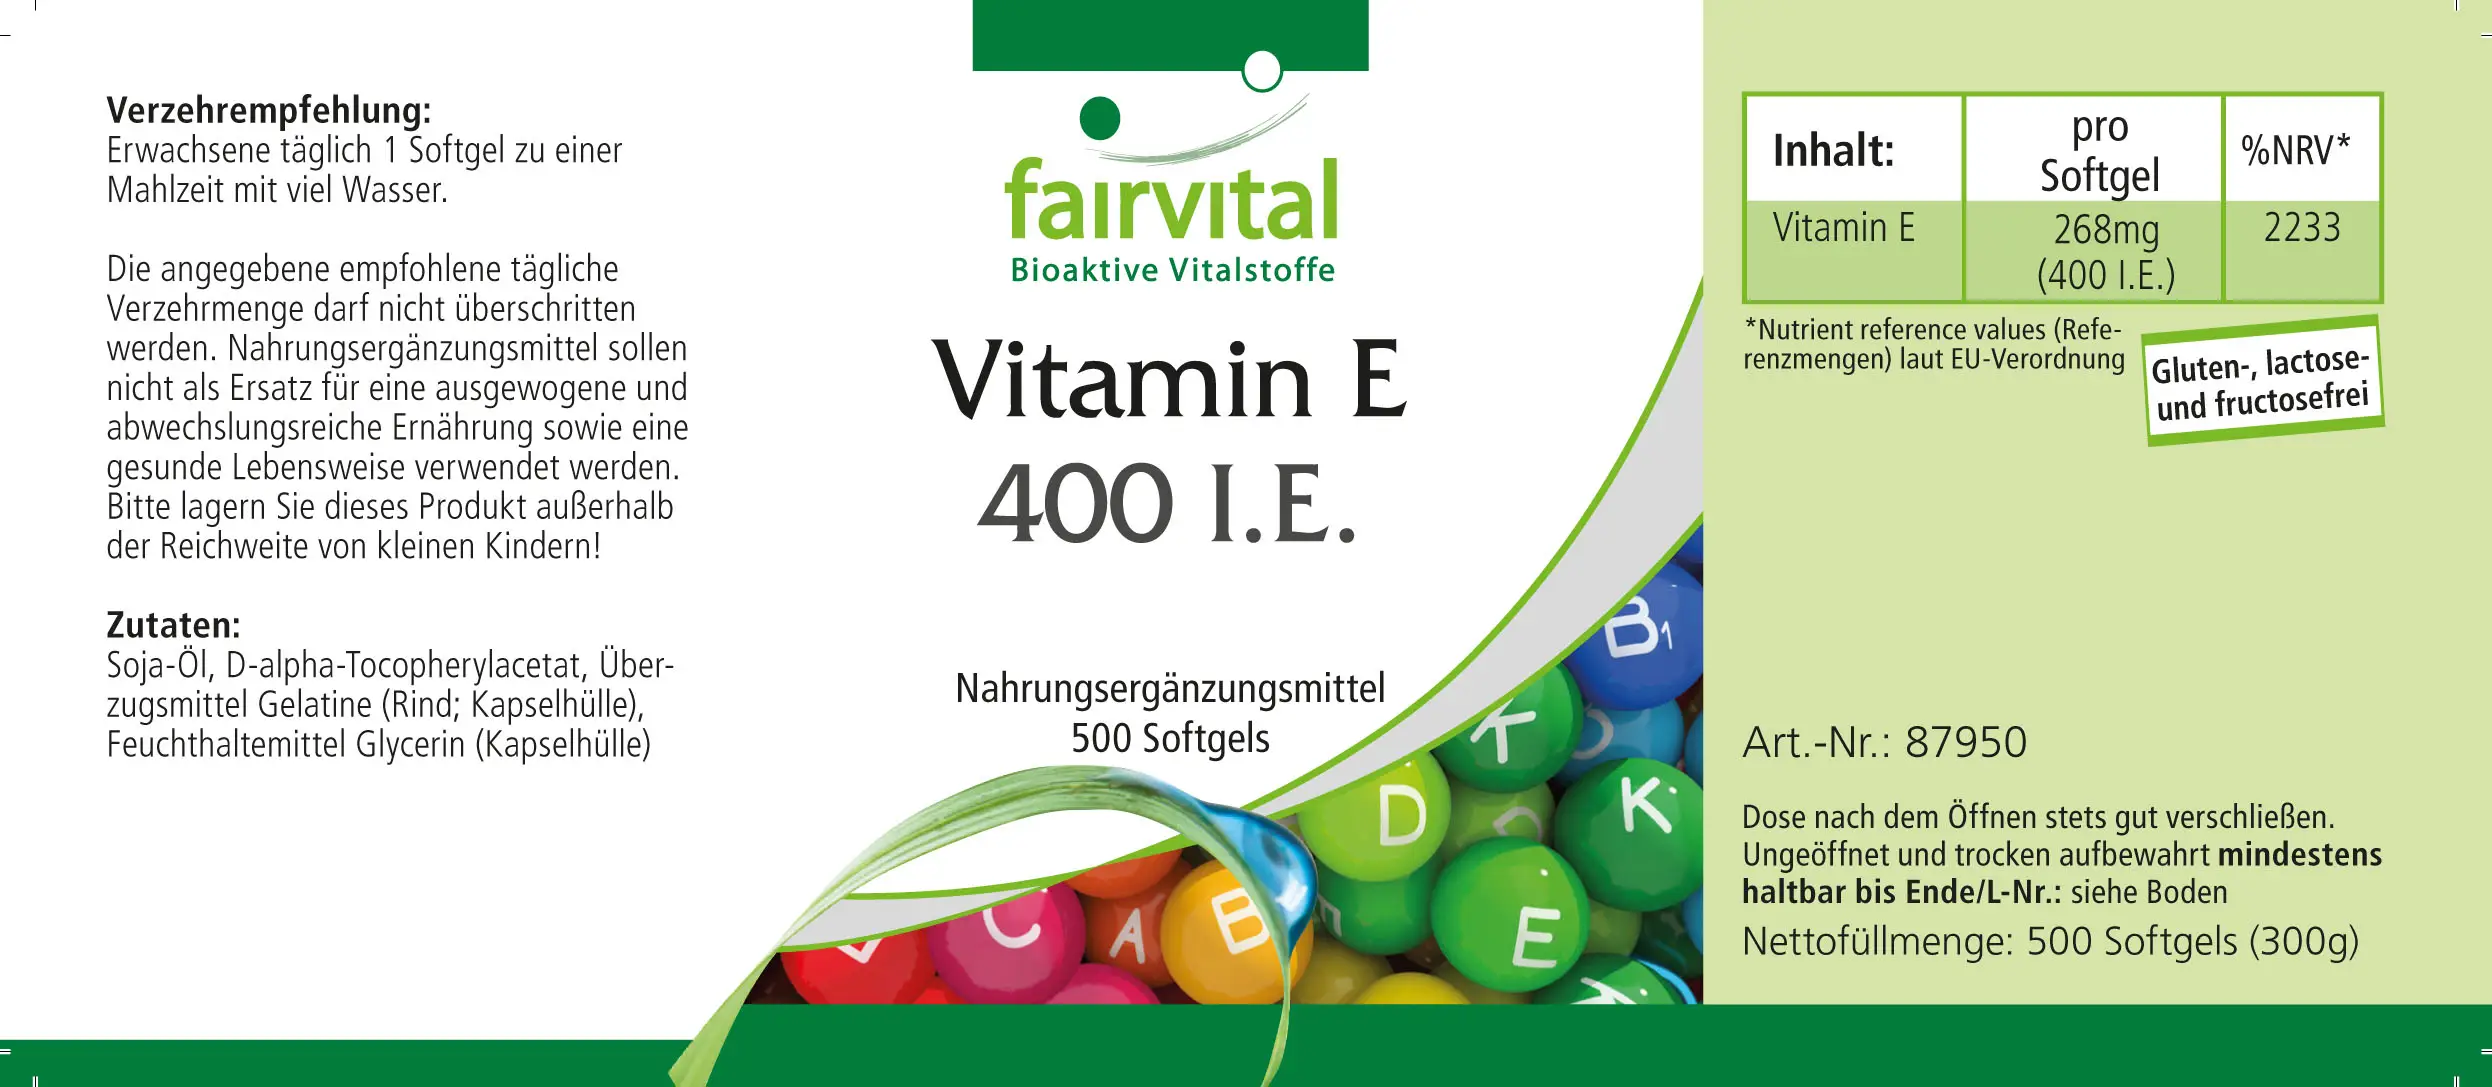 Vitamine E 400 UI - Flacon avantageux - 500 capsules molles